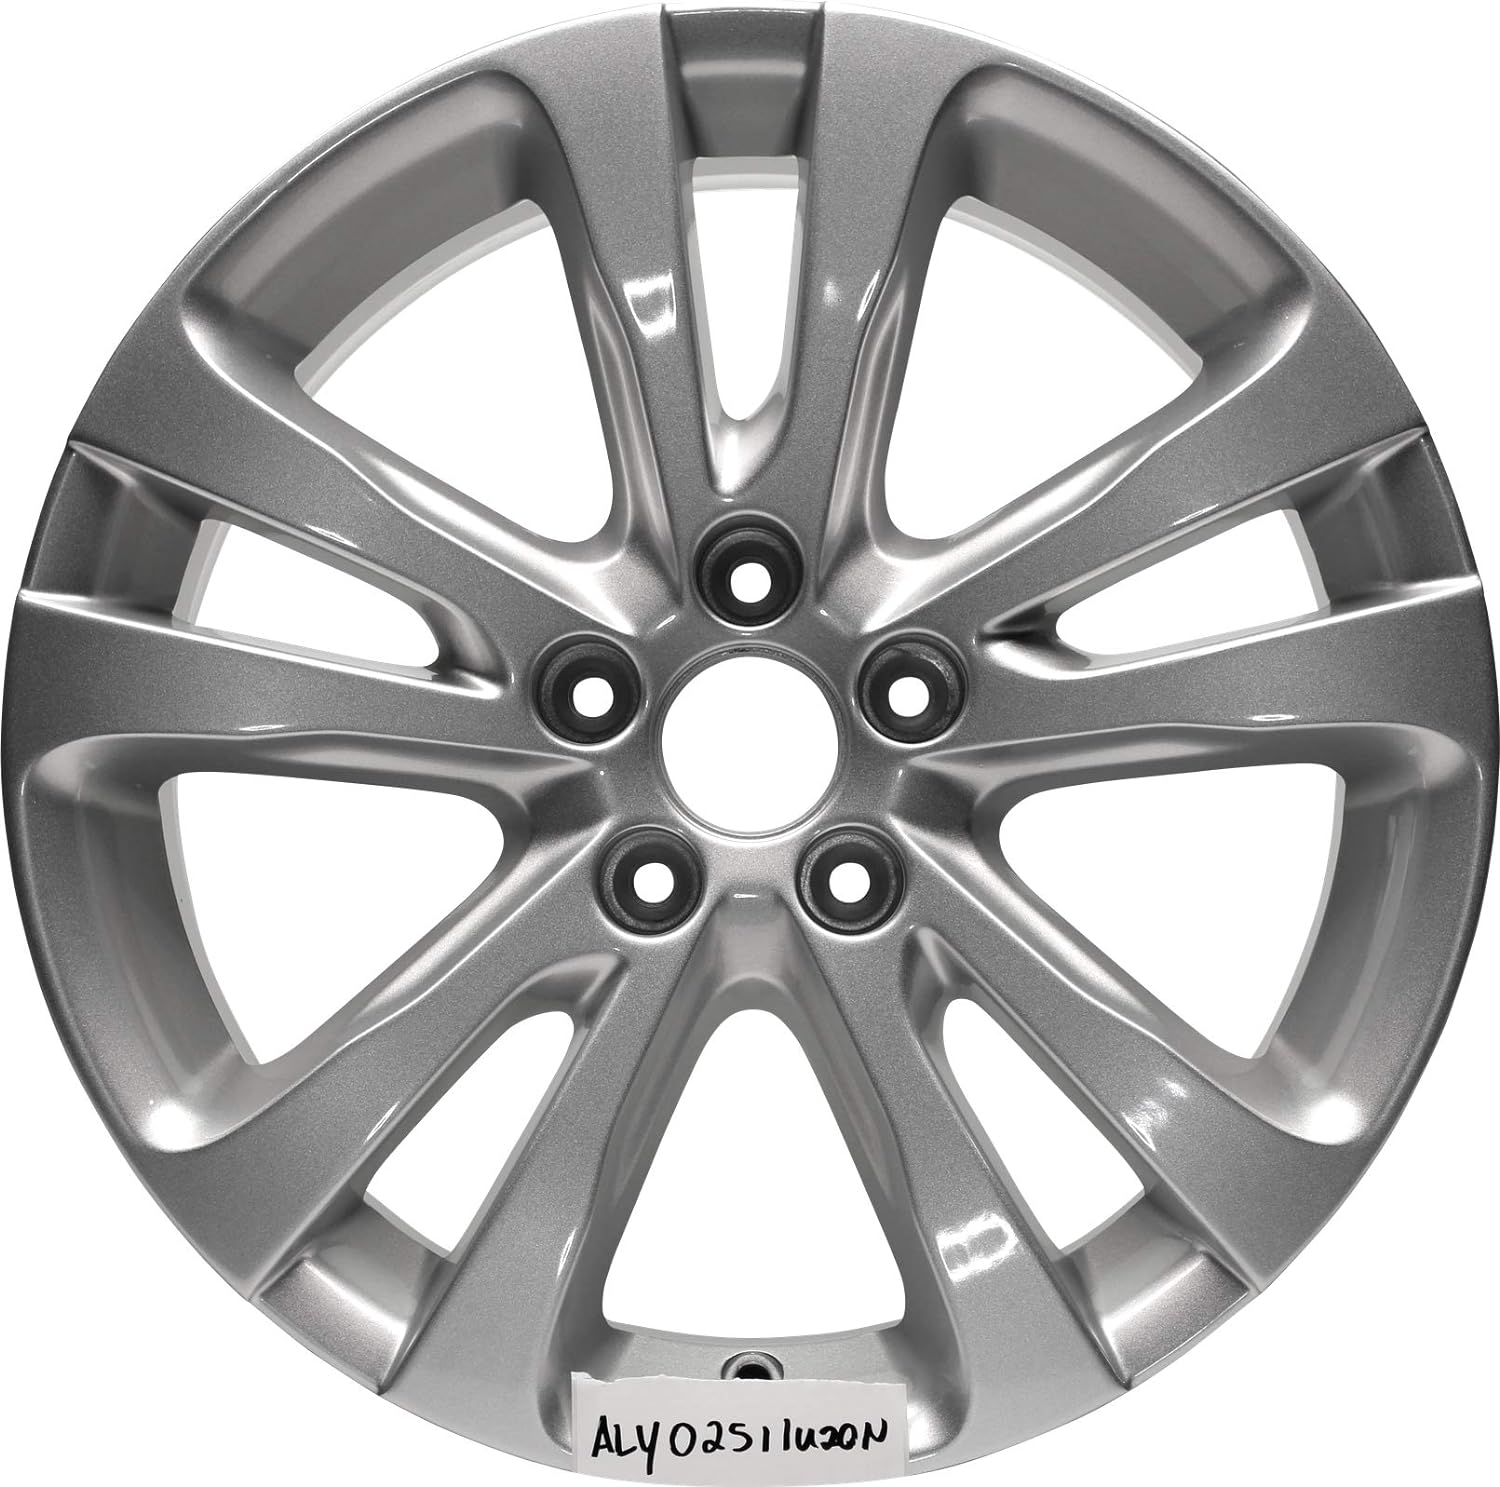 Aluminum Alloy Wheel Rim 17 Inch 2015-2017 Chrysler 200 OEM 5-114.3mm 10 Spokes